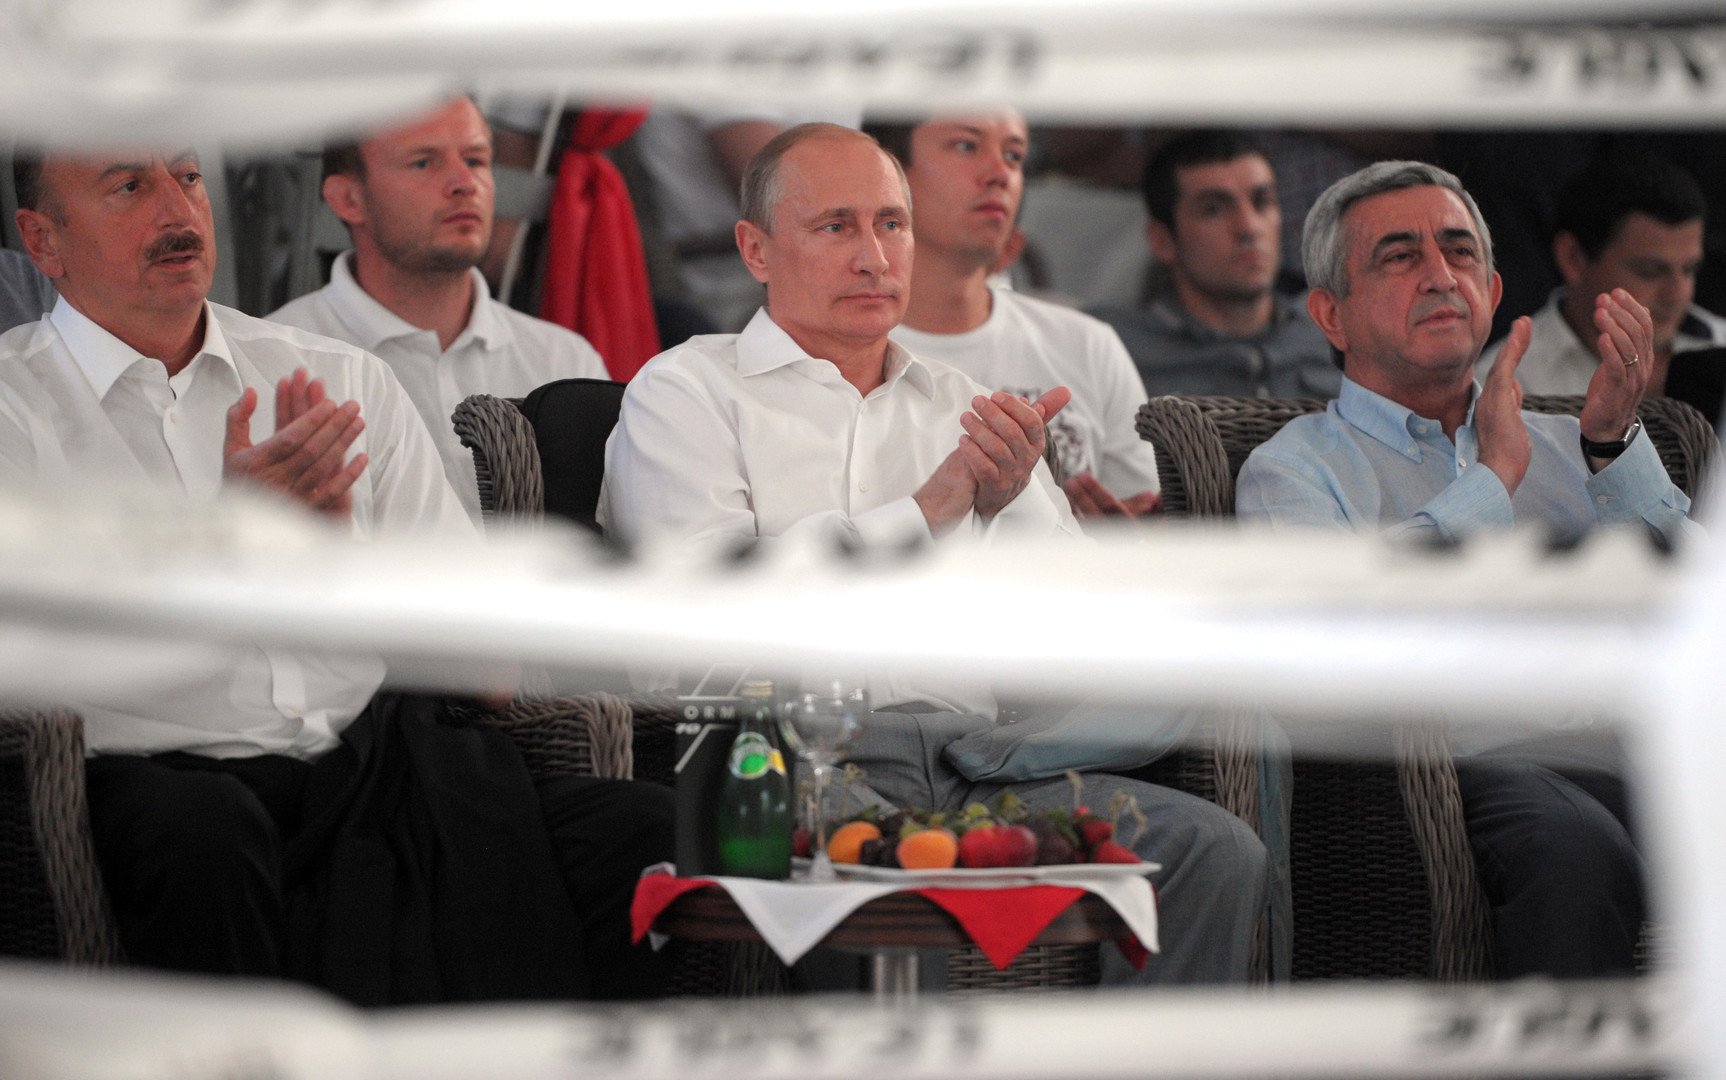 فيديو.. الرئيس بوتين يحضر البطولة الدولية للسامبا في سوتشي ويساعد أحد المصارعين